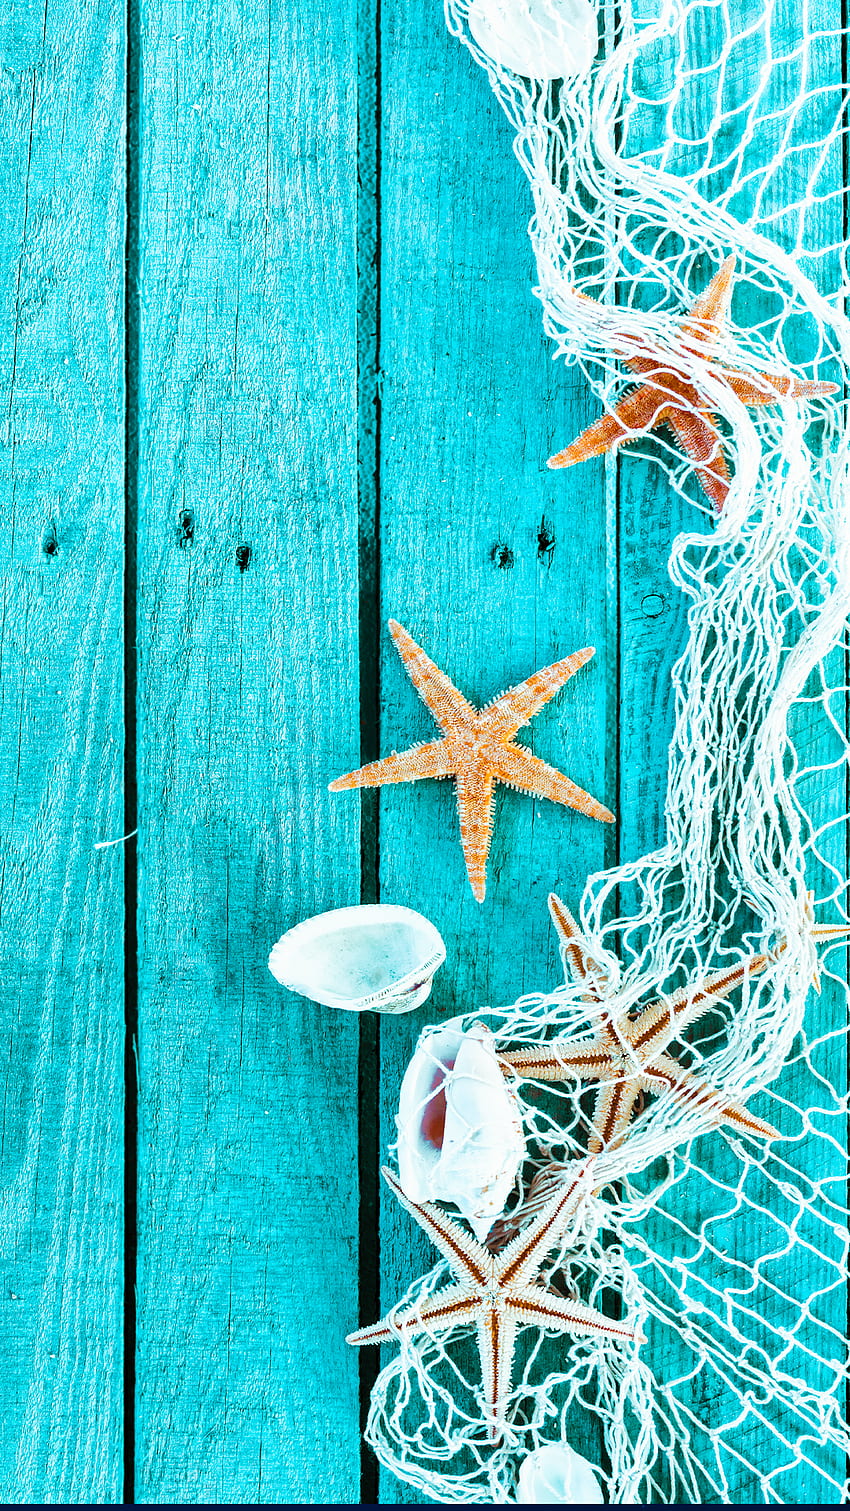 Ƒ↑TAP DAN DAPATKAN APLIKASINYA! Art Creative Sea Star Blue Wood Shell iPhone 6 Plus . Musim panas, iphone musim panas, iPhone wallpaper ponsel HD